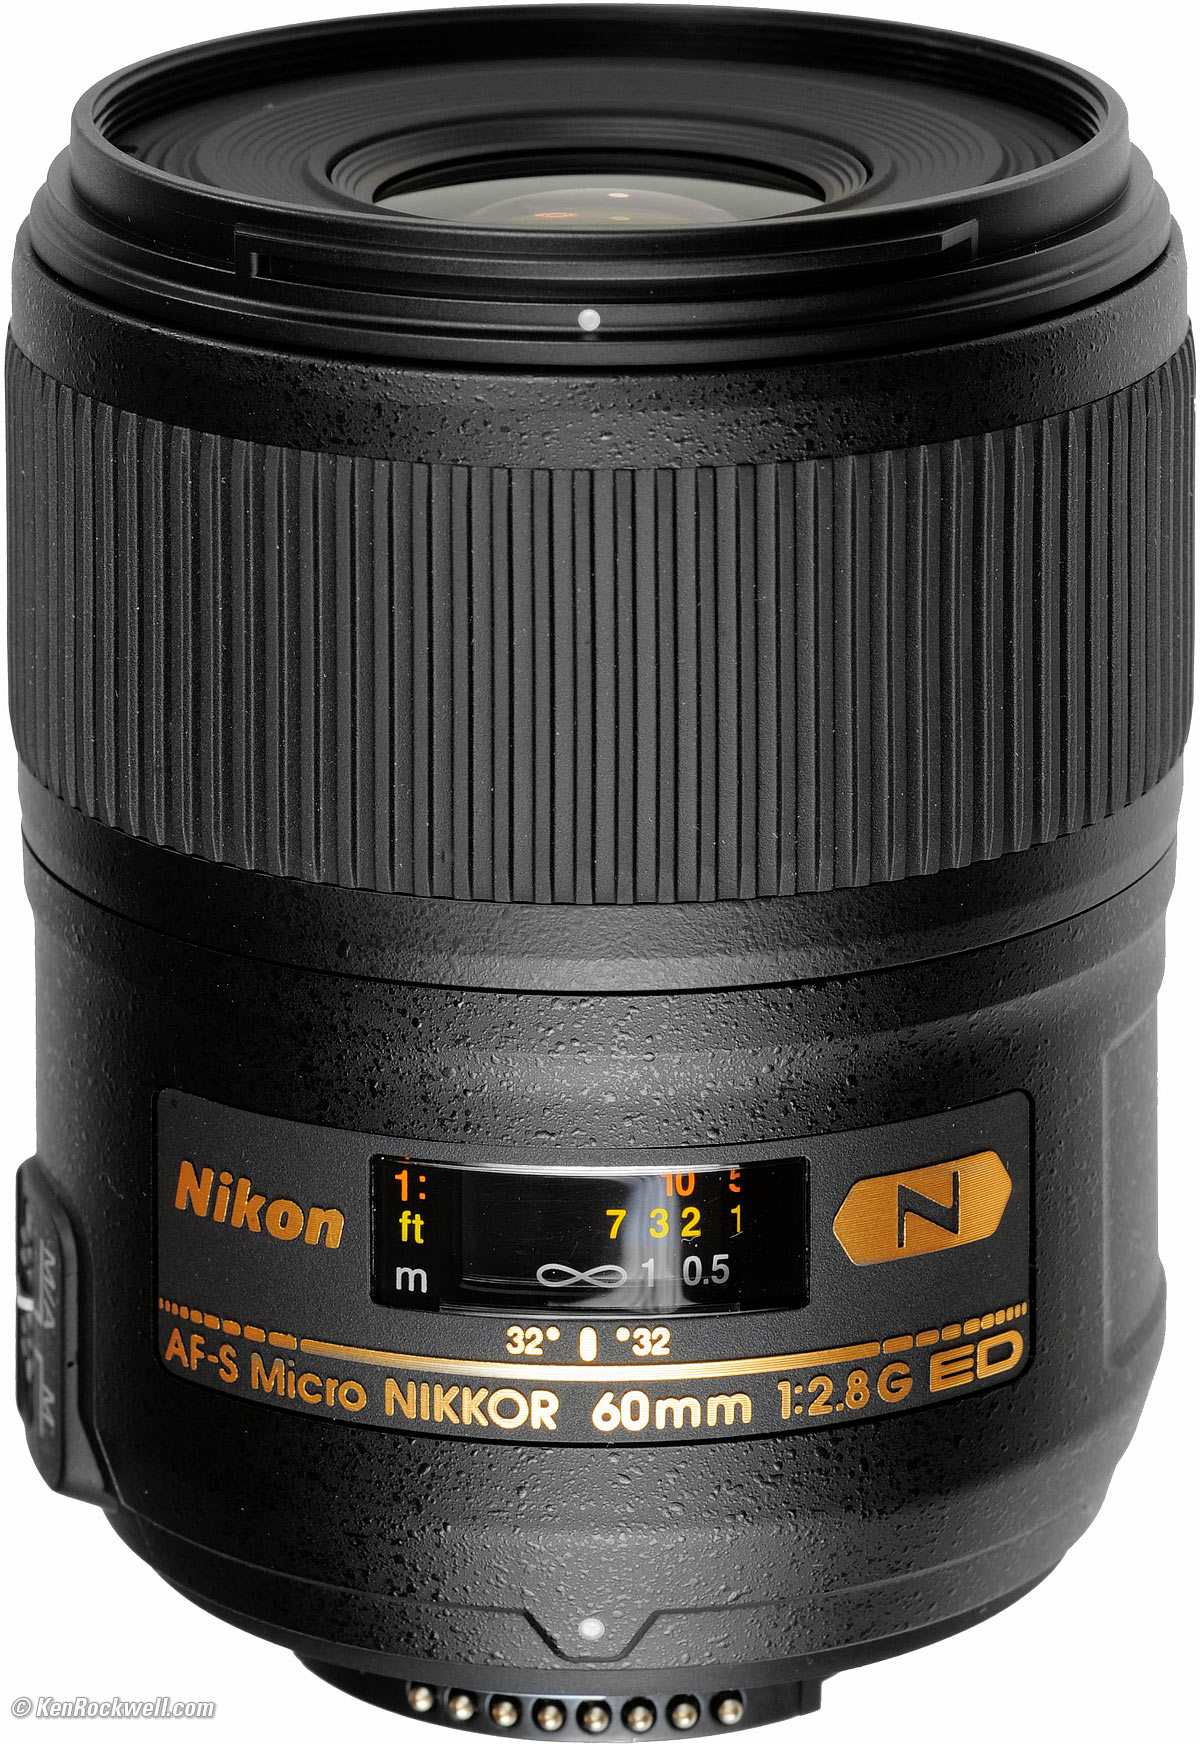 Nikon AF-S Micro NIKKOR 60mm F2.8G ED